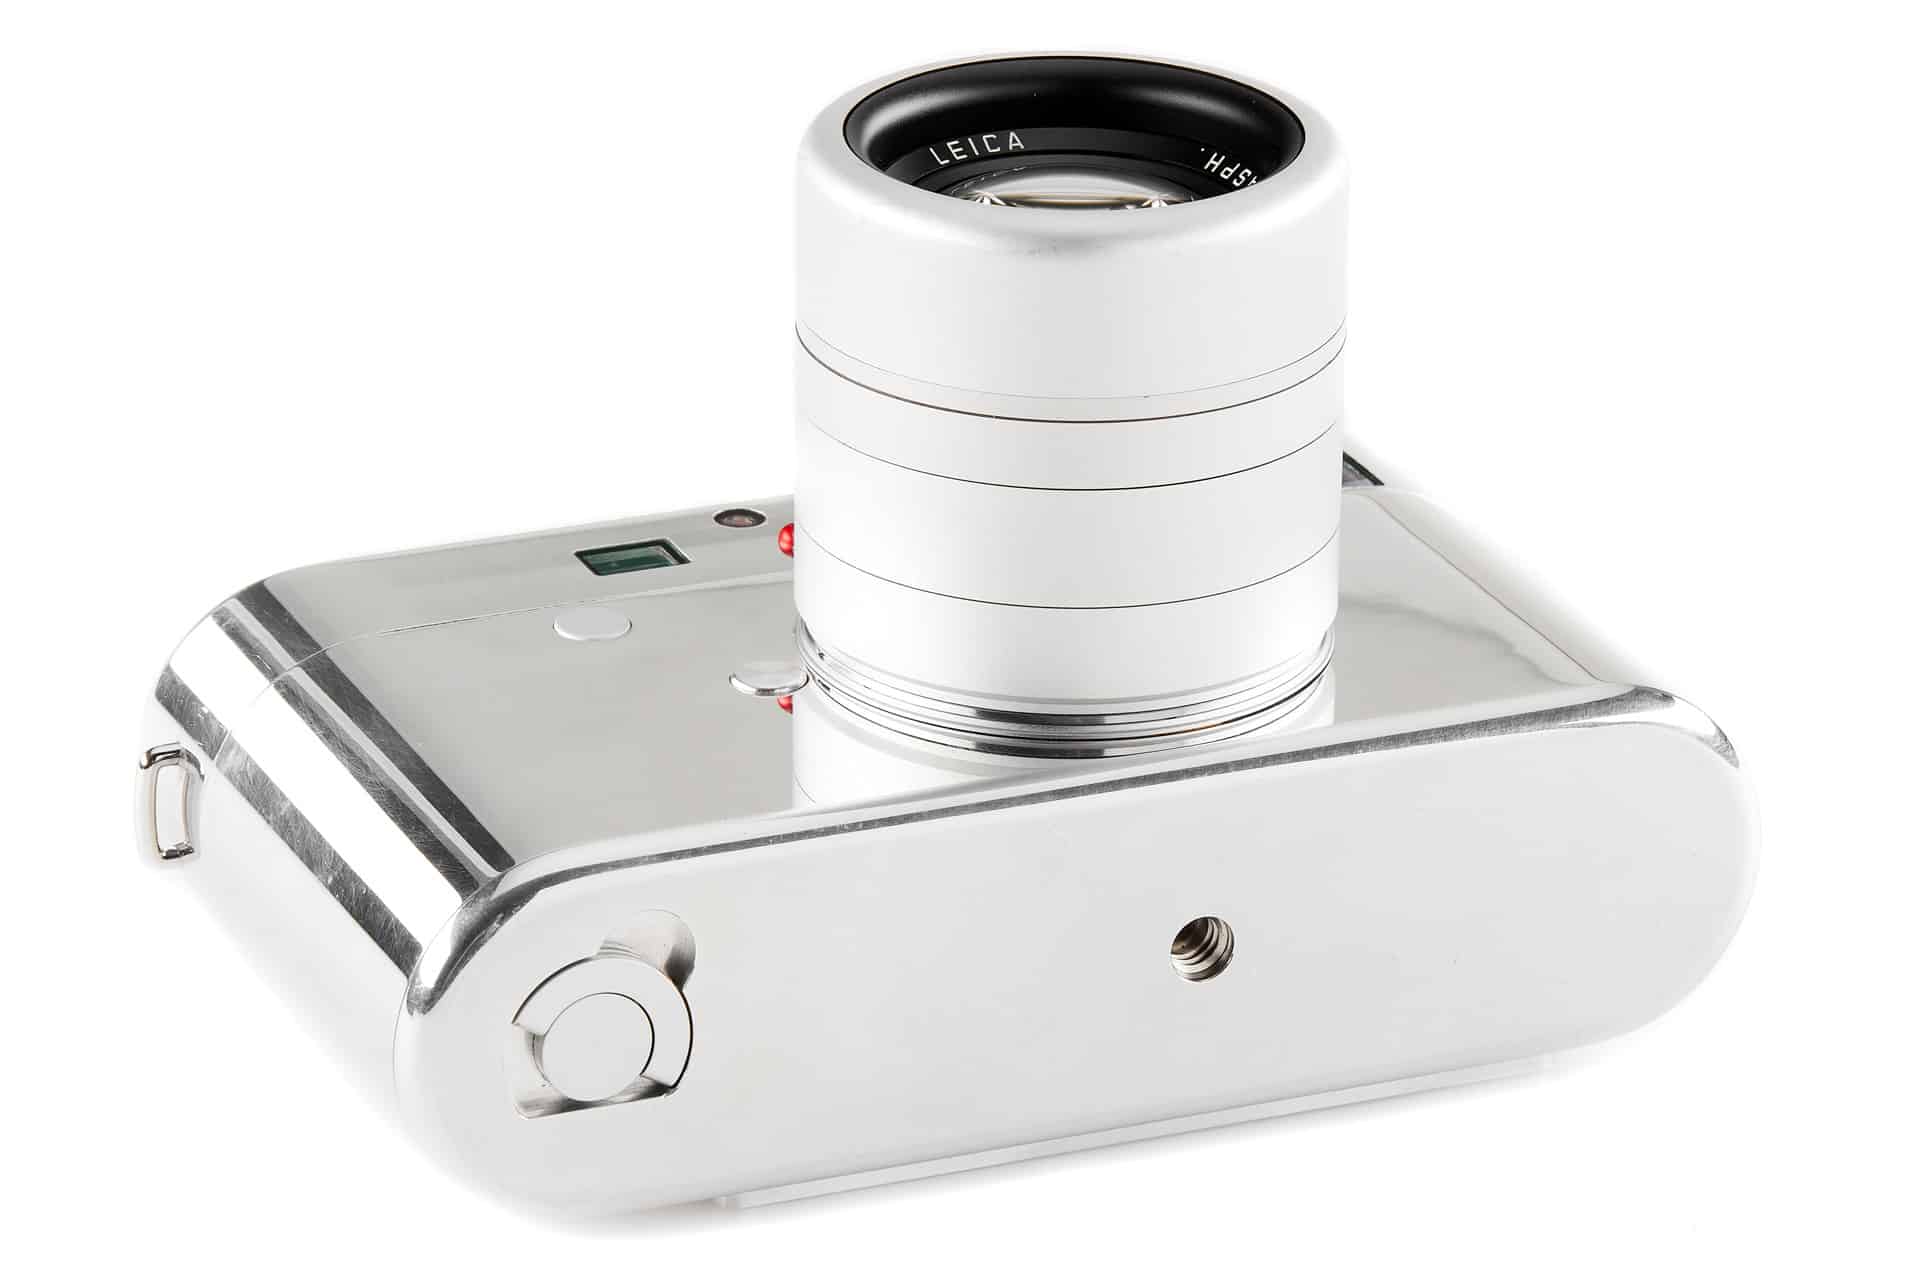 prototyp fotoaparátu Leica, ktorý navrhol Jony Ive a Mark Newson